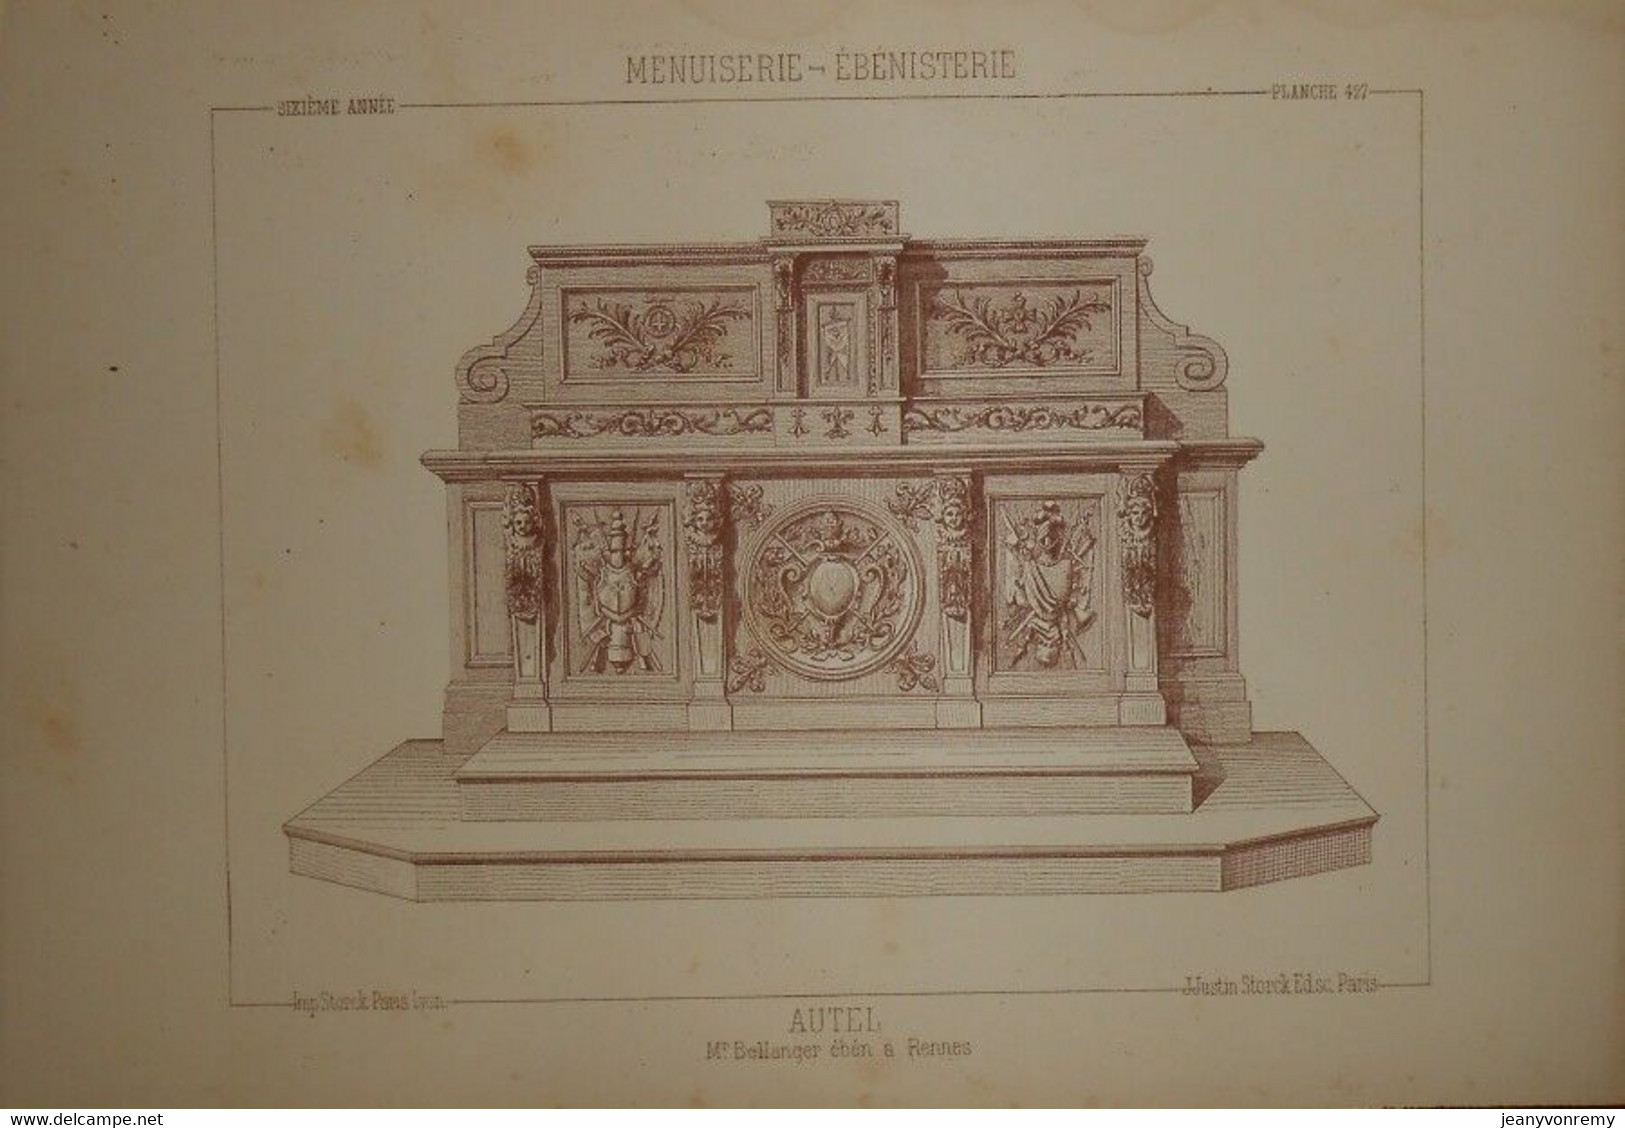 Autel. Menuiserie - Ebénisterie. M. Bellanger, ébéniste à Rennes. 1887. - Other Plans